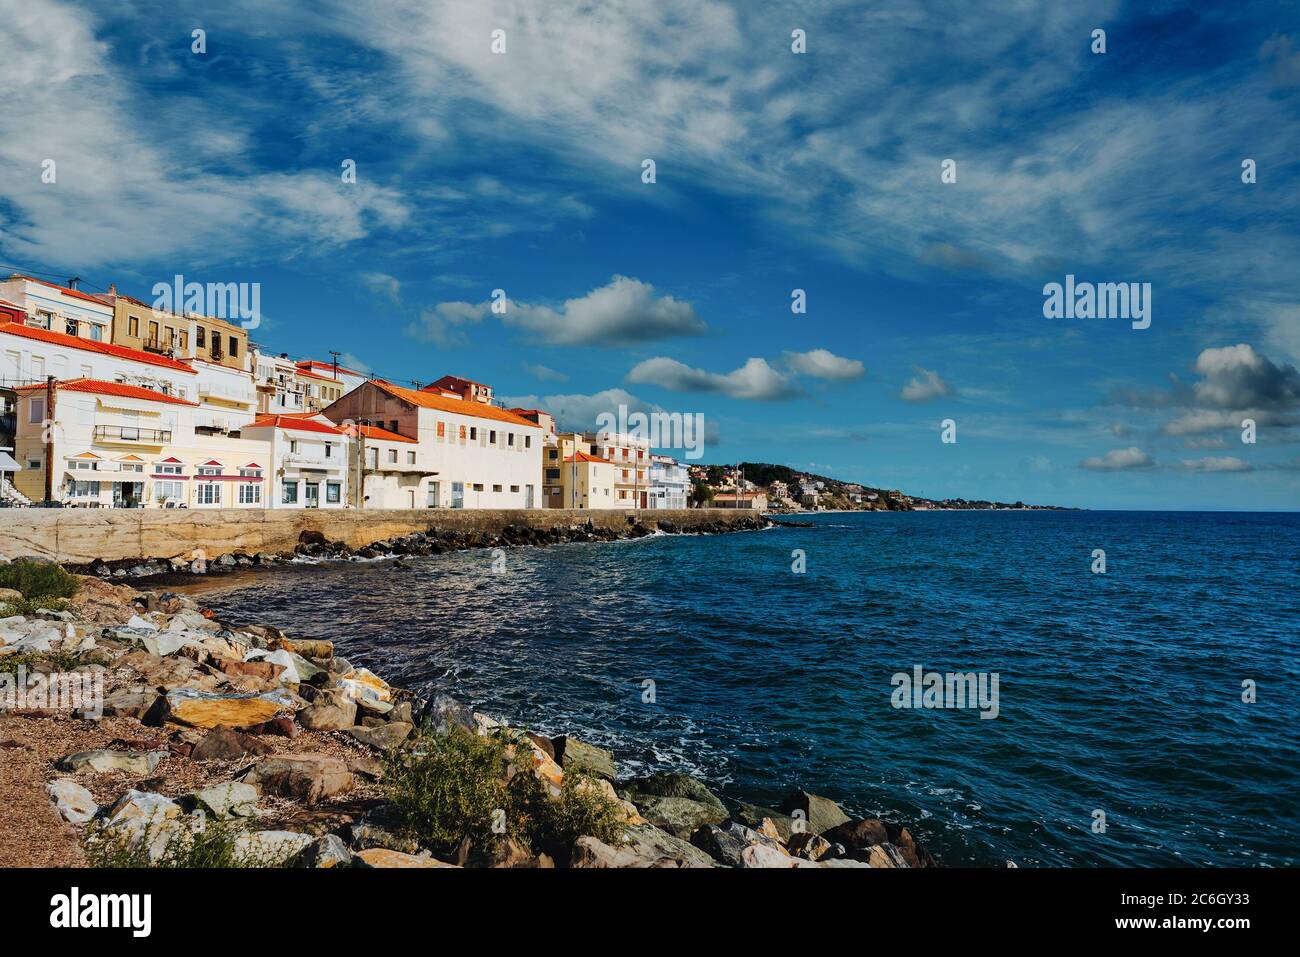 Landschaftlich reizvolle Küstenstadt Plomari (Plomarion) auf der schönen Insel Lesbos (Lesbos) in Griechenland. Stockfoto